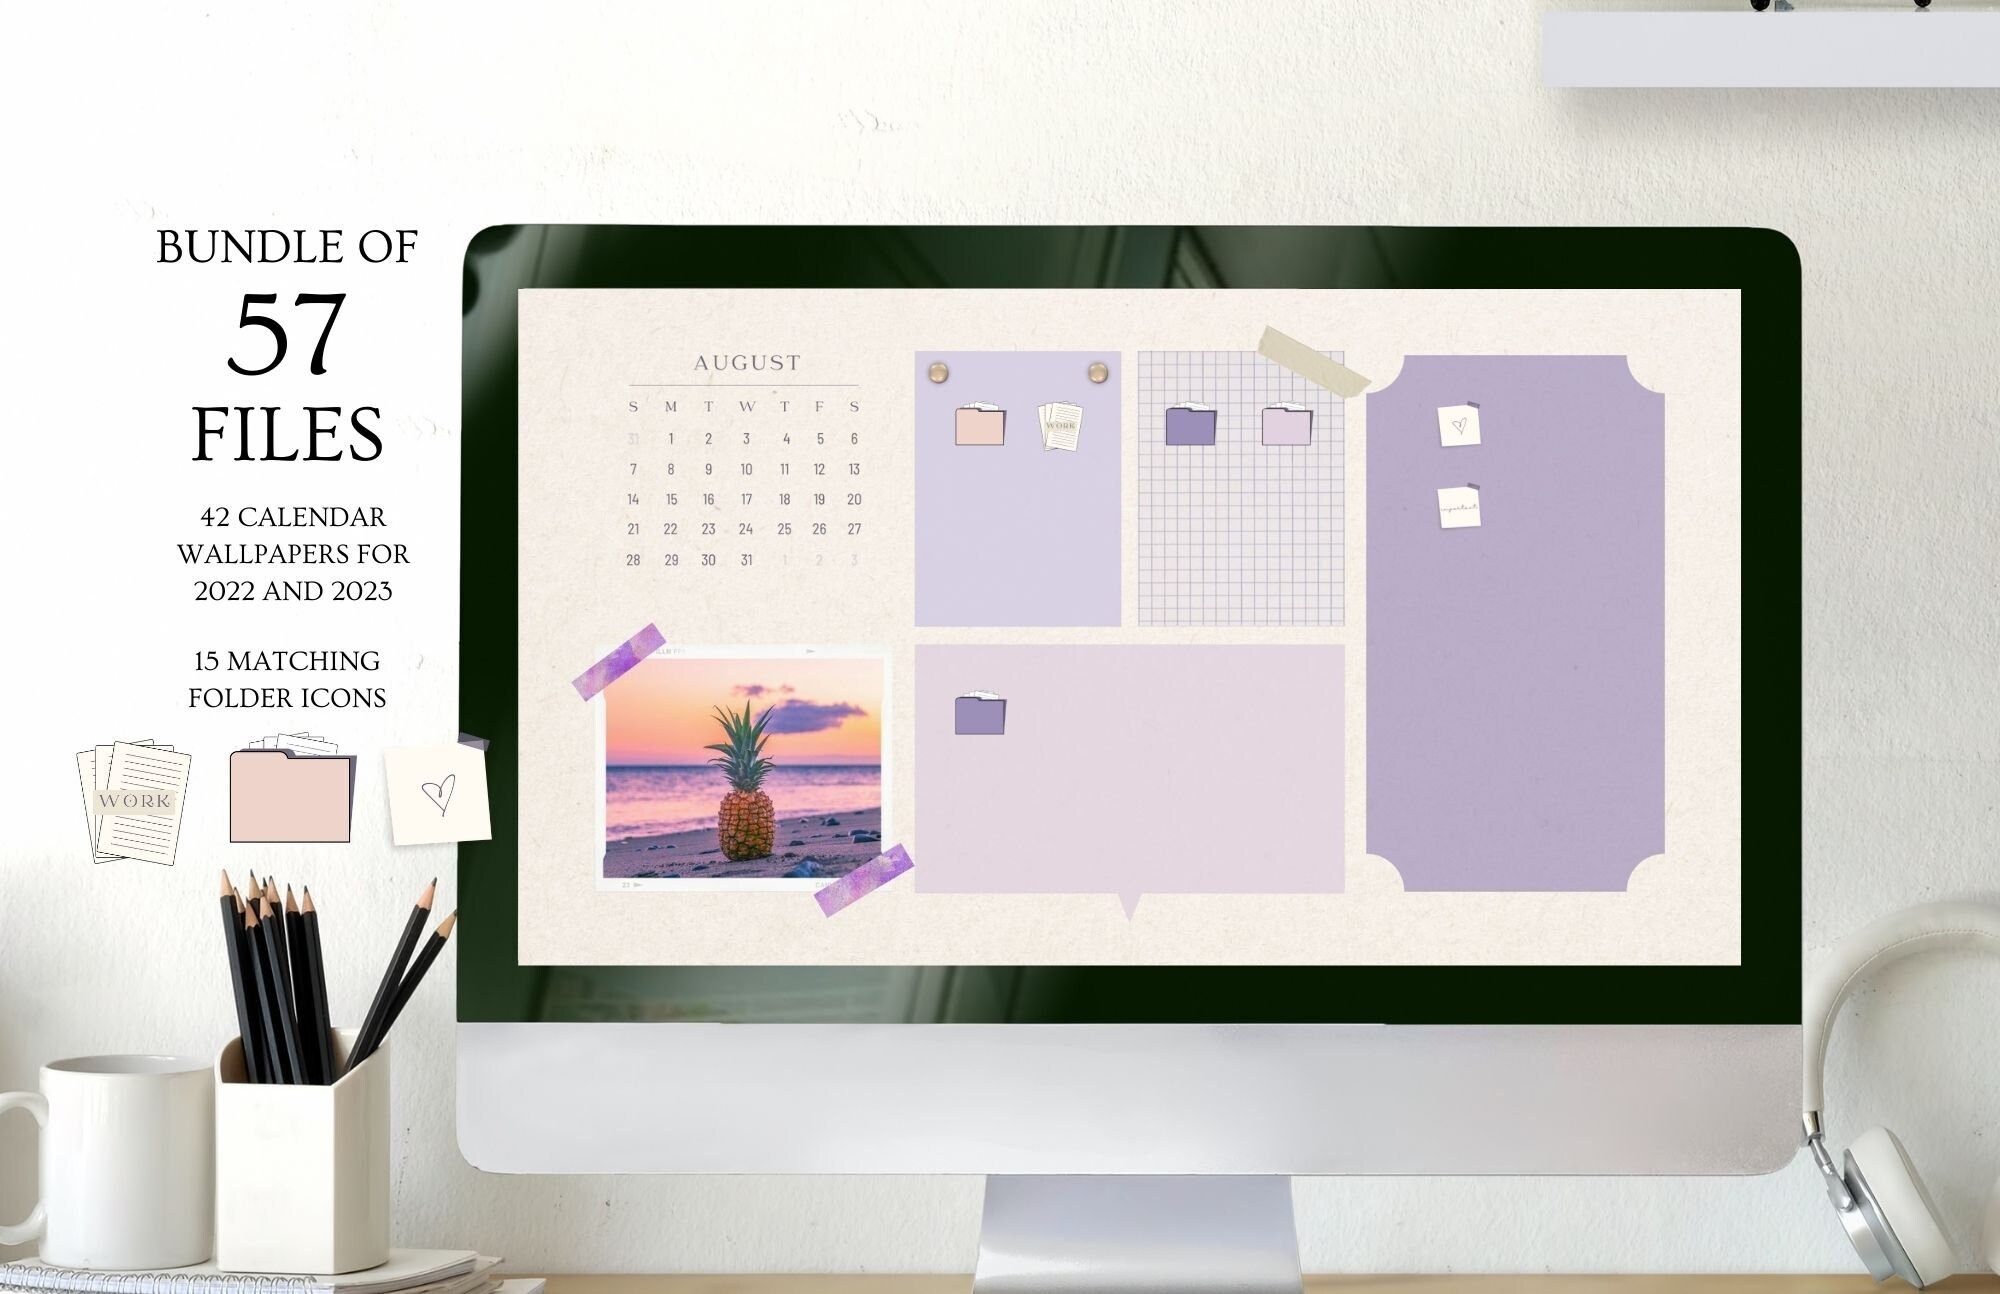 Lilac Desktop Organizer: Bạn đang tìm kiếm cách dễ dàng và nhanh chóng để sắp xếp bàn làm việc của mình? Chỉ cần một chiếc Lilac Desktop Organizer – nó không chỉ giúp bạn sắp xếp các tài liệu mà còn giúp cho bàn của bạn trở nên phong cách hơn. Hãy xem hình ảnh để thấy rõ tính năng của sản phẩm.